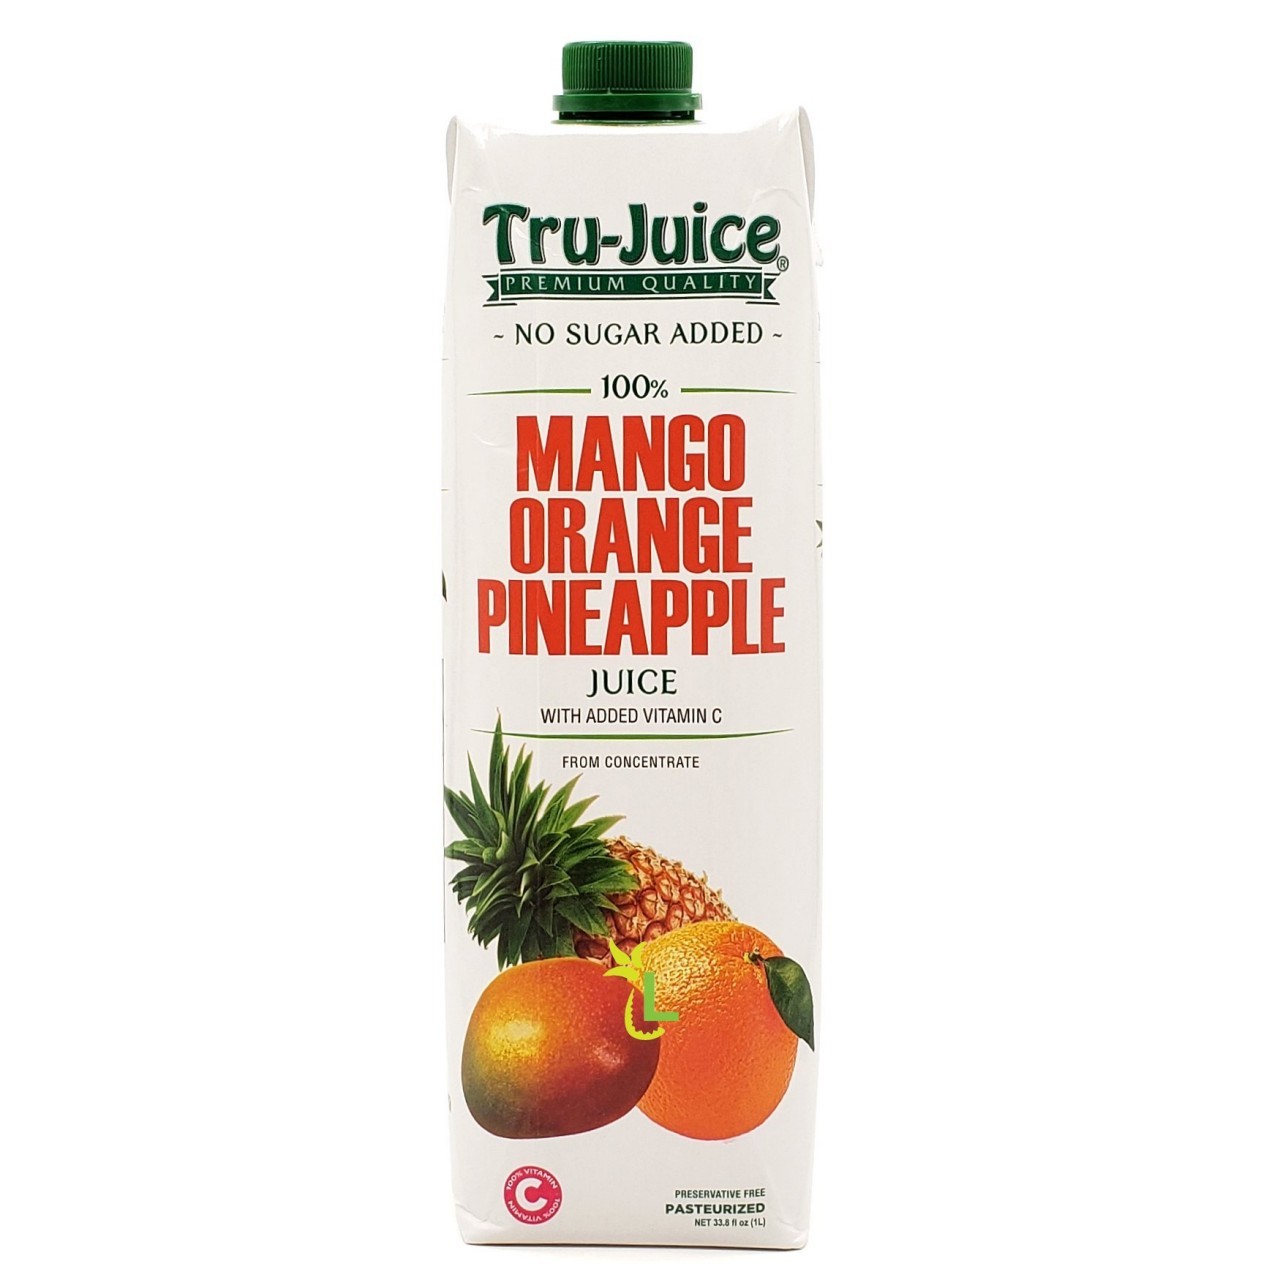 TRU-JUICE 100% MANGO ORANGE PINE 1L